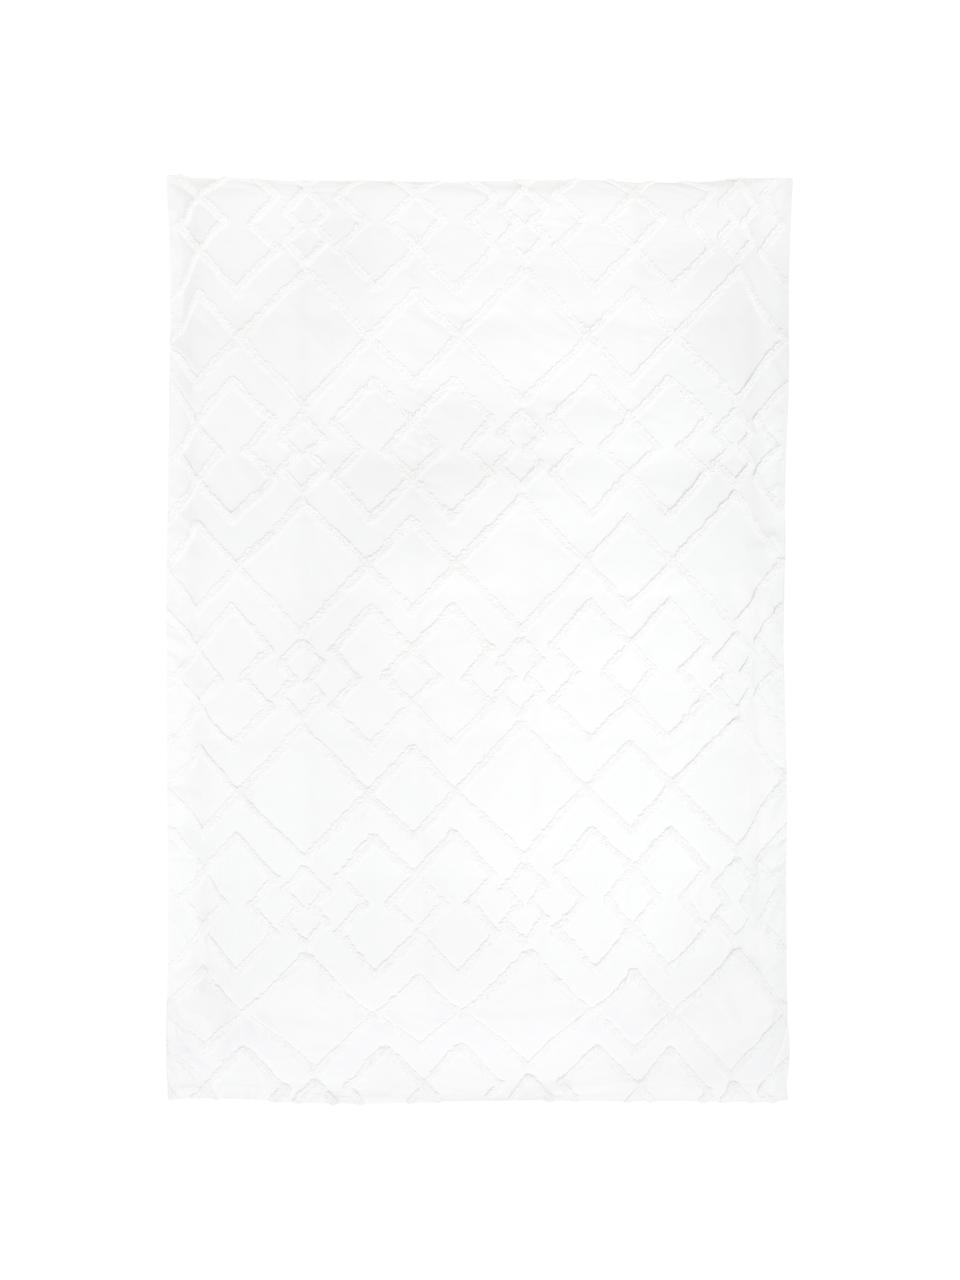 Biancheria da letto in percalle con decoro a ciuffi Faith, Bianco, 155 x 200 cm + 1 federa 50 x 80 cm